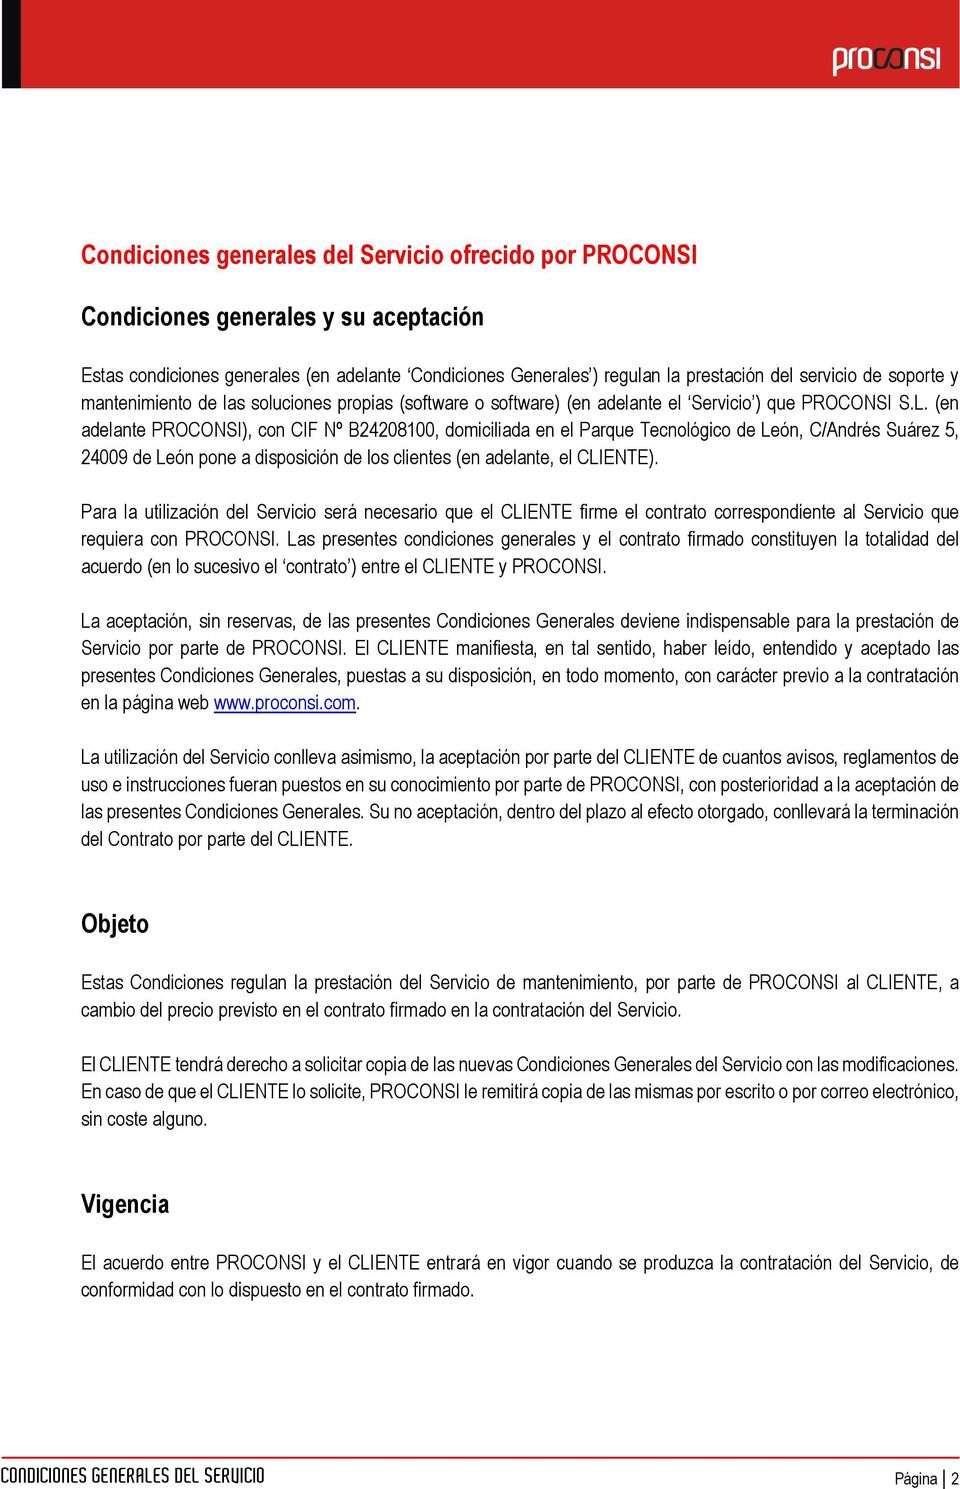 (en adelante PROCONSI), con CIF Nº B24208100, domiciliada en el Parque Tecnológico de León, C/Andrés Suárez 5, 24009 de León pone a disposición de los clientes (en adelante, el CLIENTE).